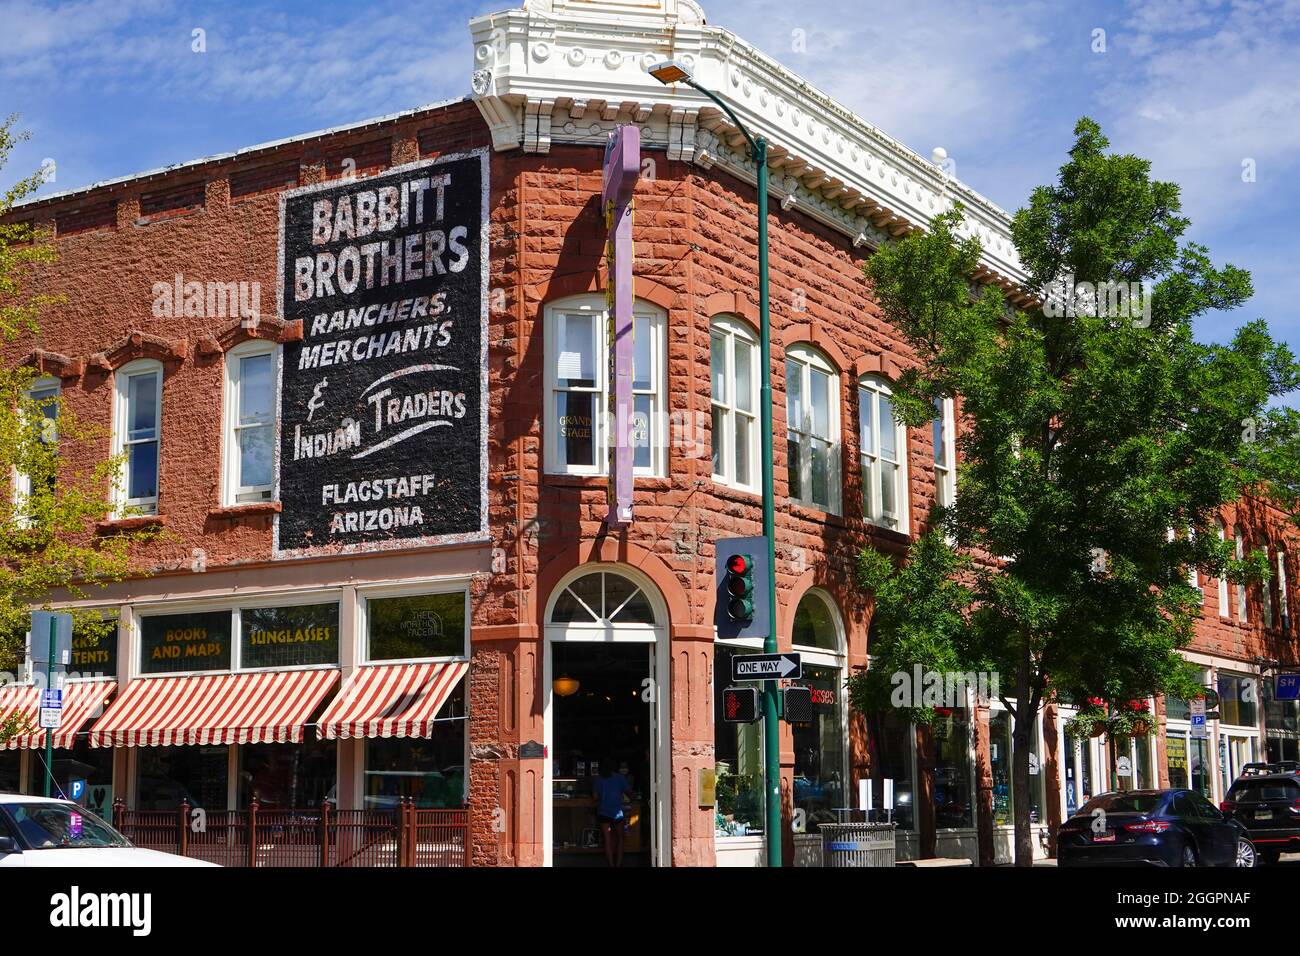 Storico Babbit Brothers, est 1888, con rancher, Merchants, e Indian Traders segno, N. San Francisco Street, centro di Flagstaff, Arizona, Stati Uniti. Foto Stock